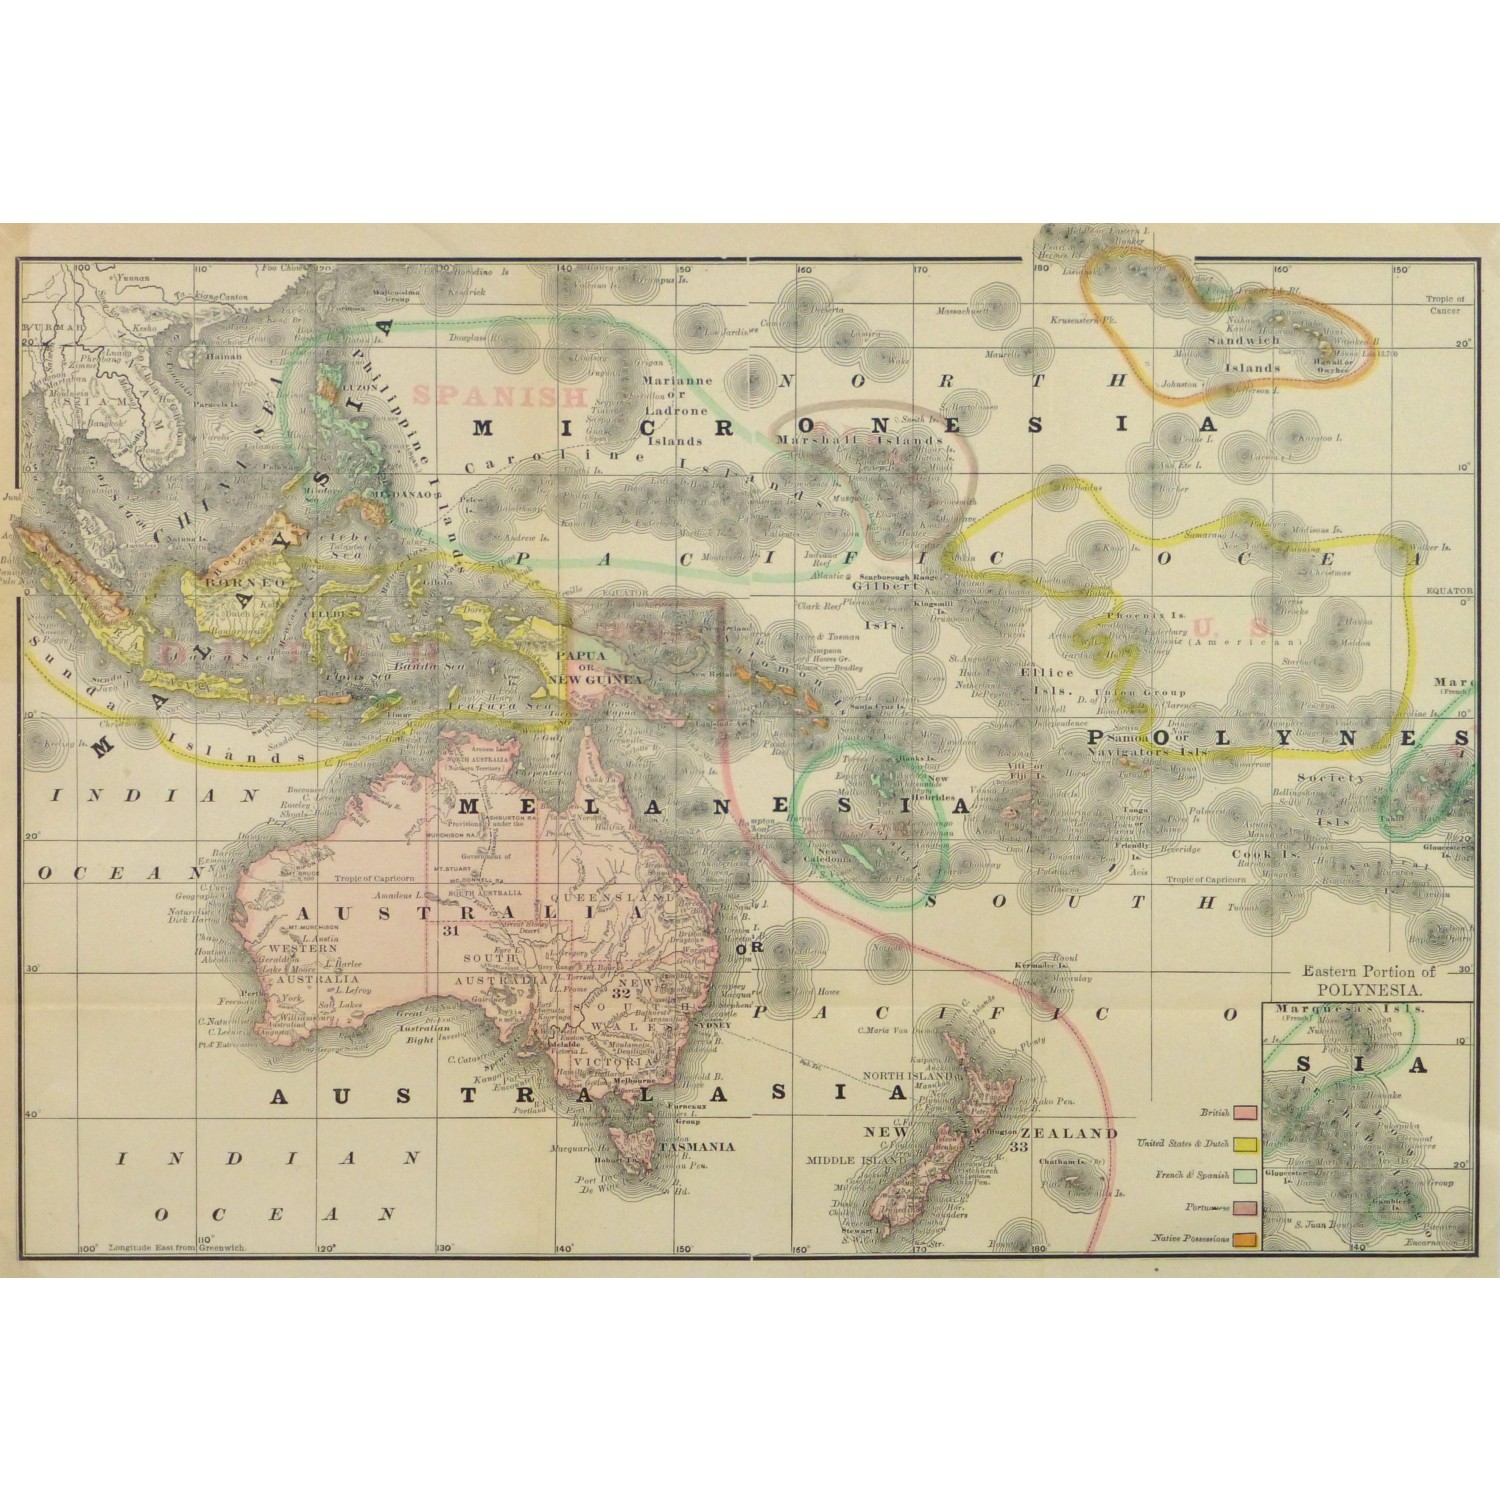 1890s Encyclopedia Britannica Antique Map : Oceania 49 Australasia